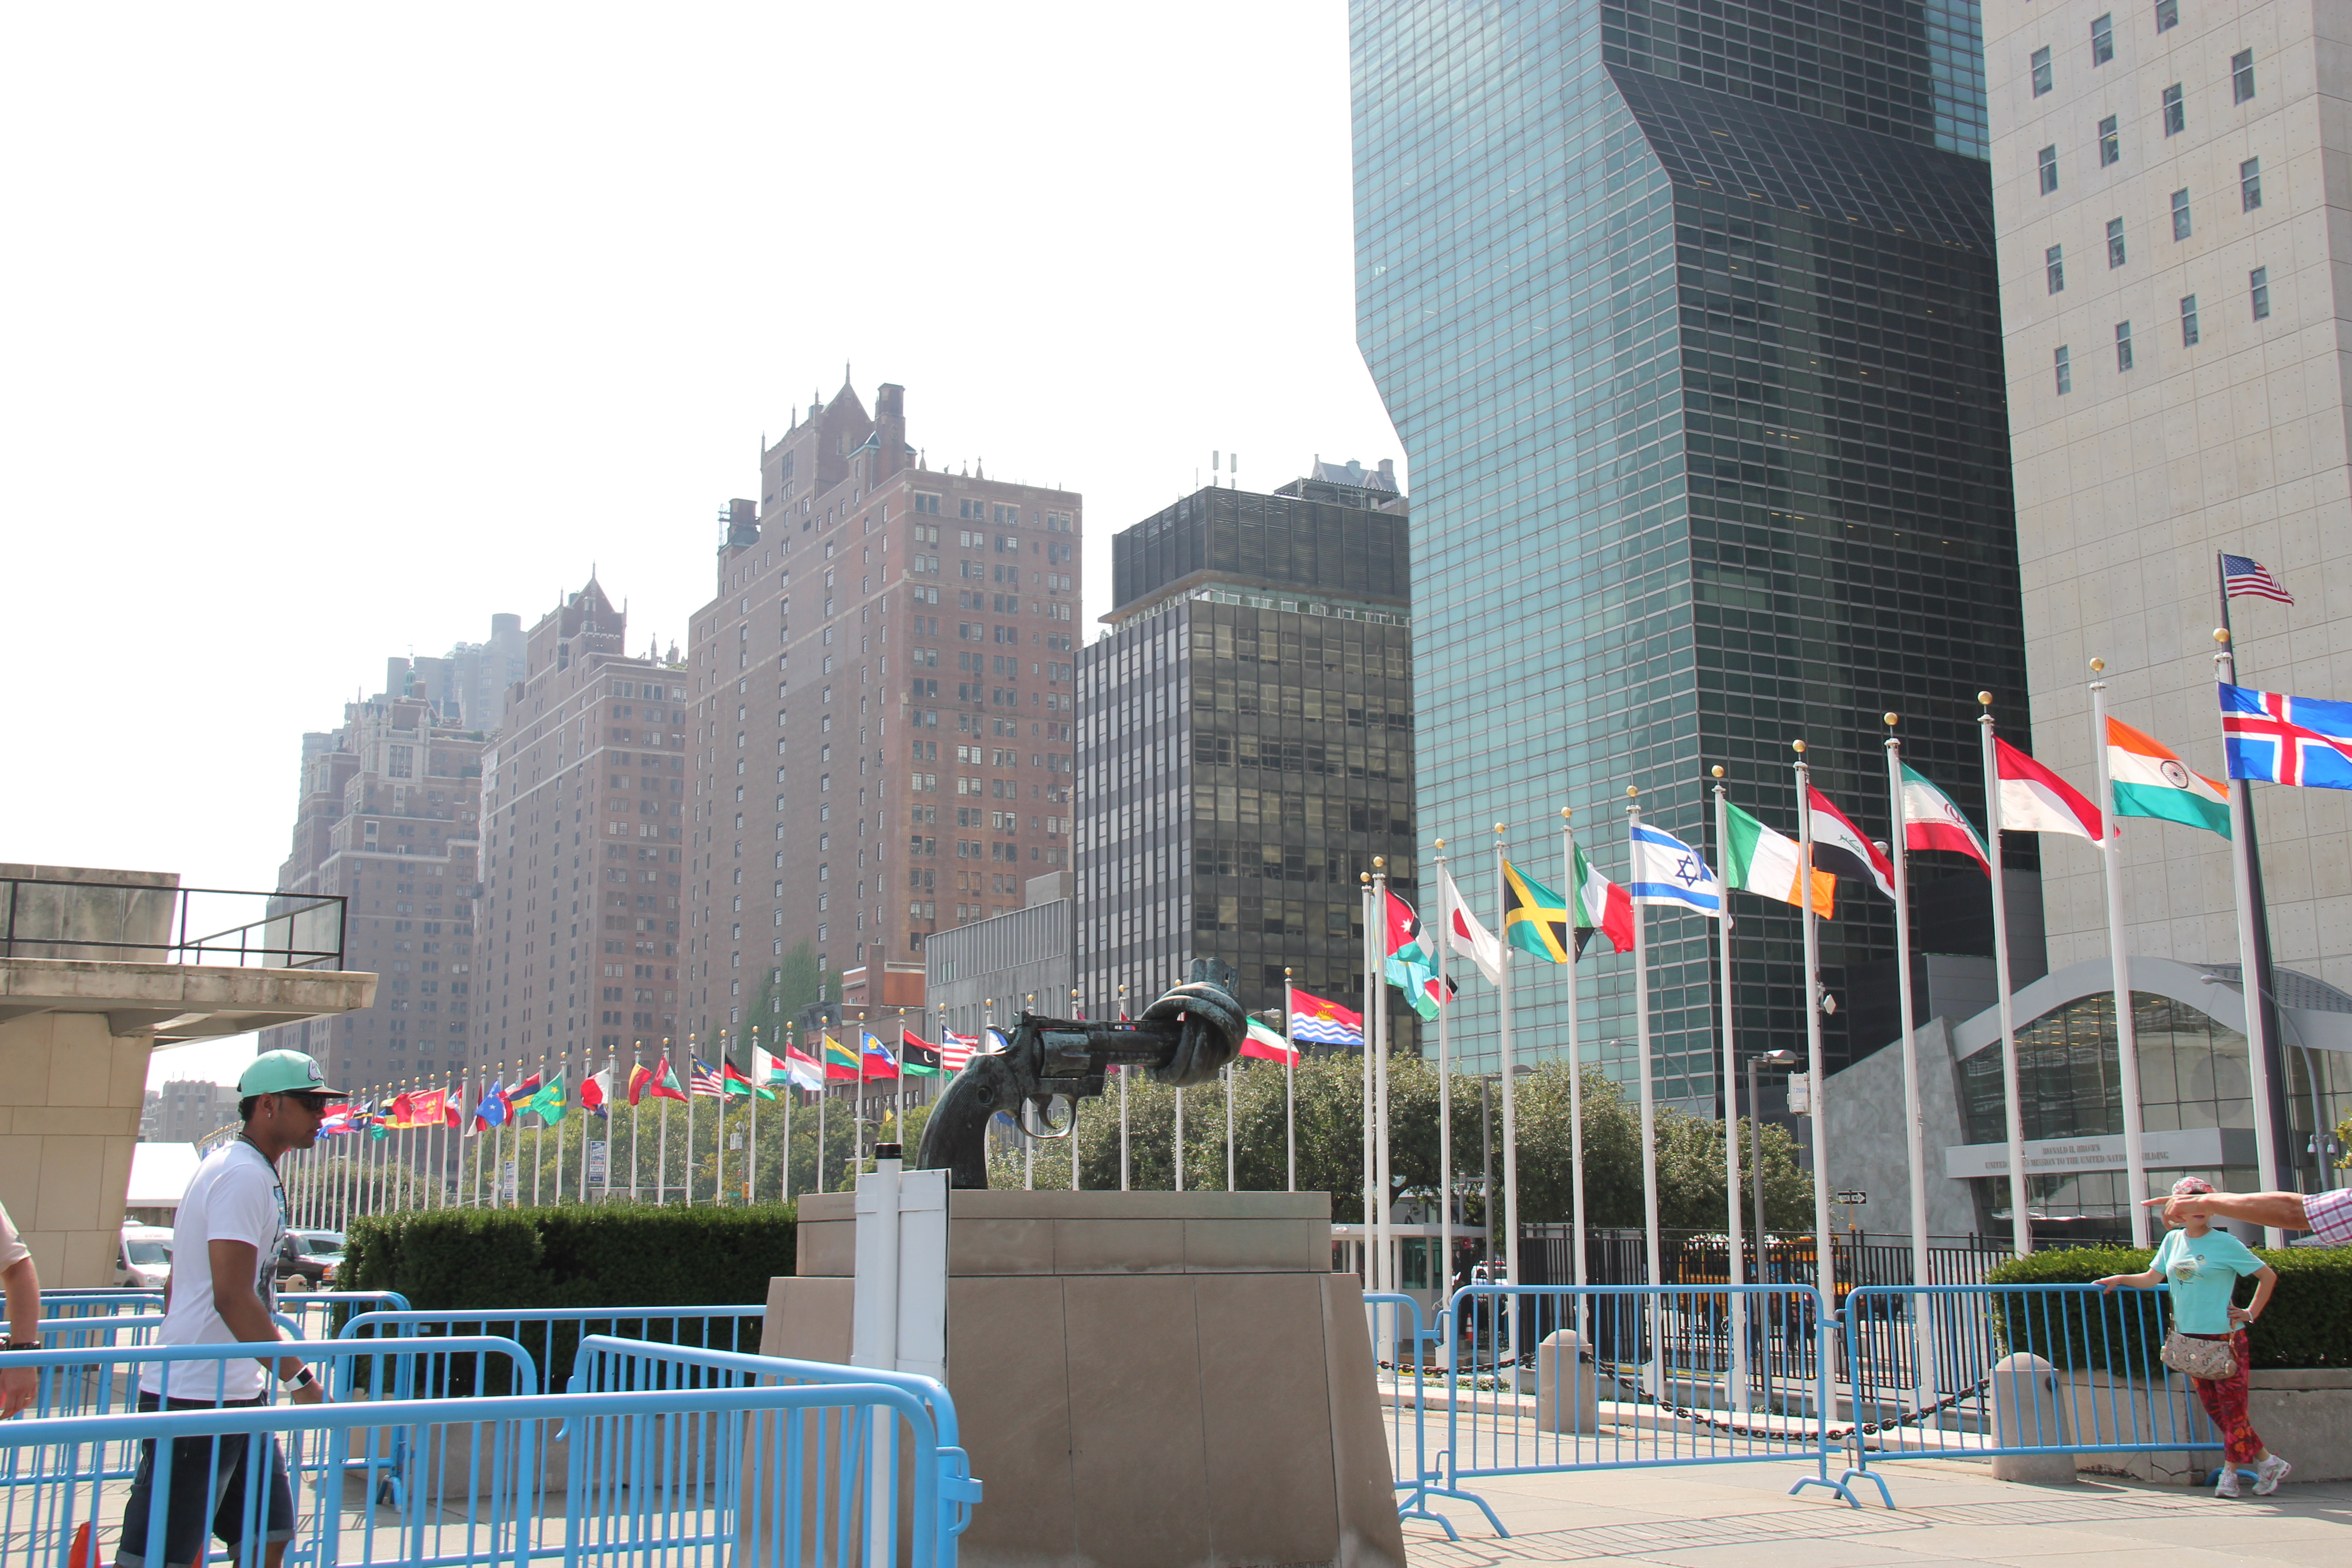 北京联合国大楼参观图片